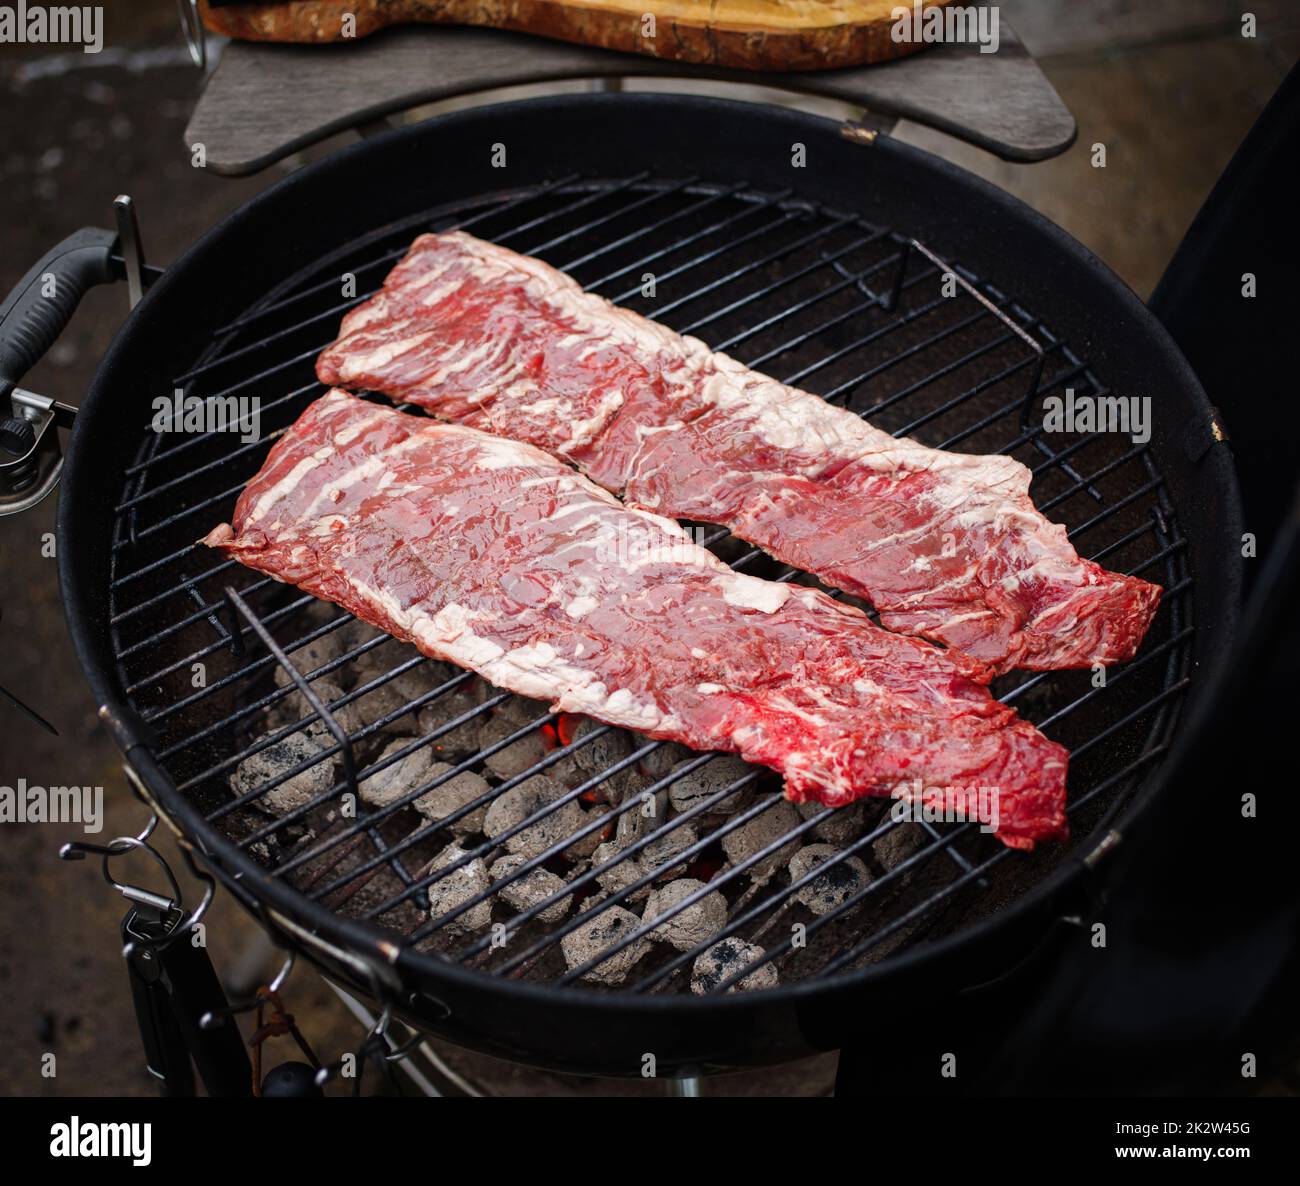 Zartes oder onglet-Steak mit Rindfleisch auf dem Grill. Grillfleisch. GRILLSPEZIALITÄTEN Stockfoto